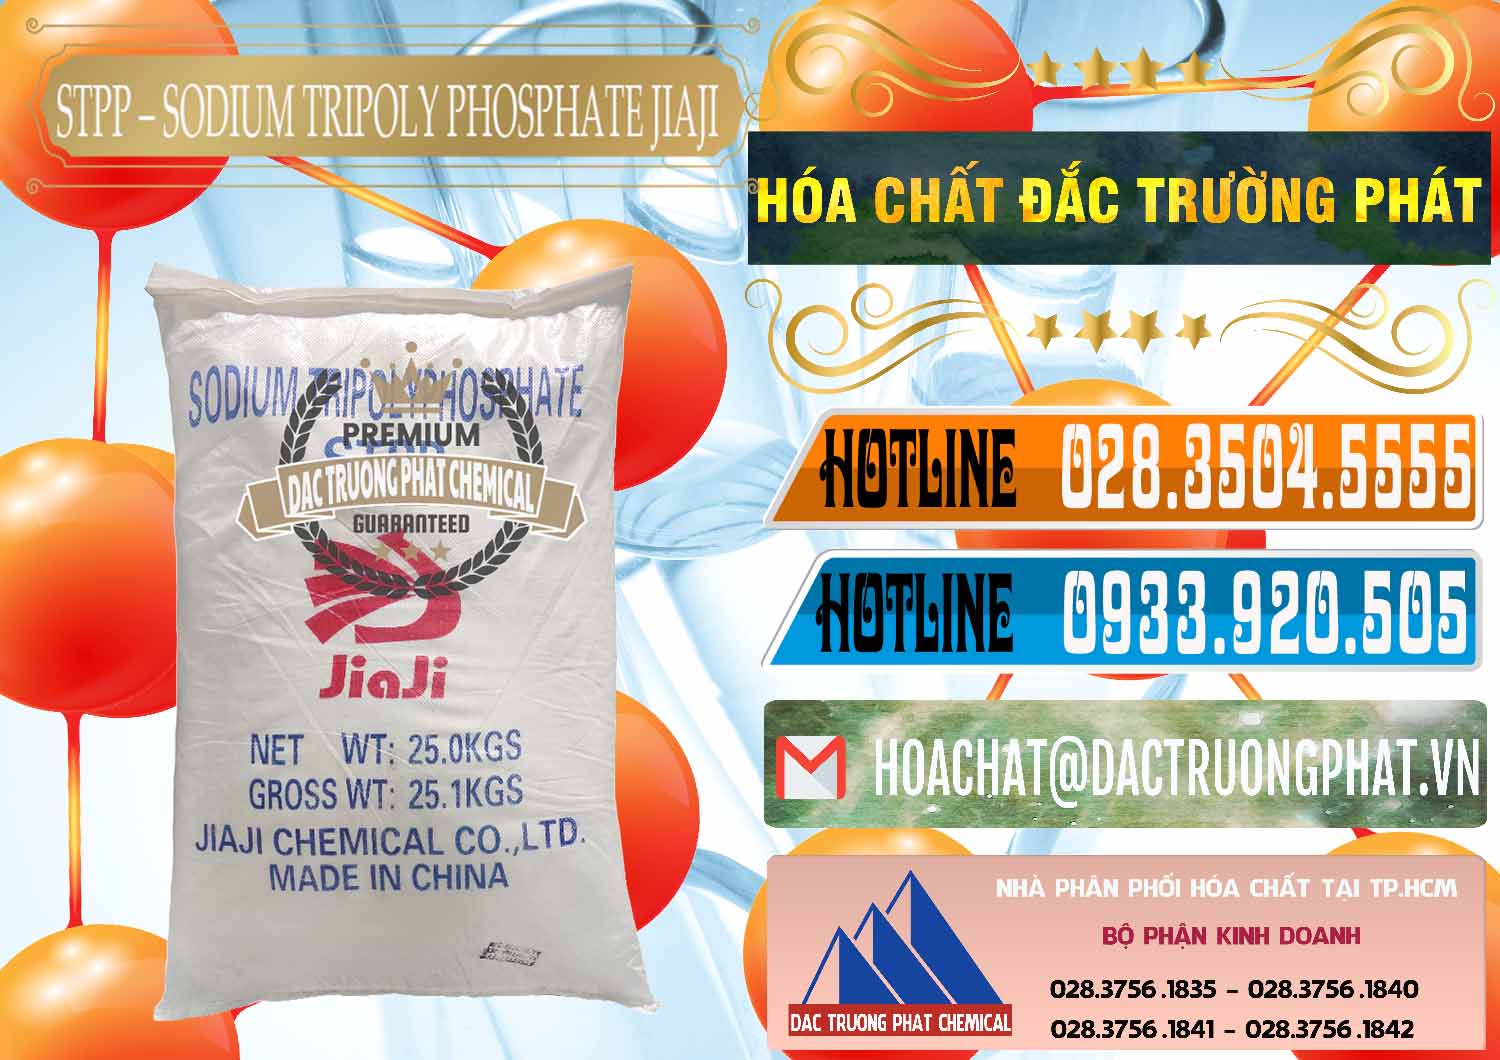 Nơi phân phối ( bán ) Sodium Tripoly Phosphate - STPP Jiaji Trung Quốc China - 0154 - Cty phân phối ( cung cấp ) hóa chất tại TP.HCM - stmp.net